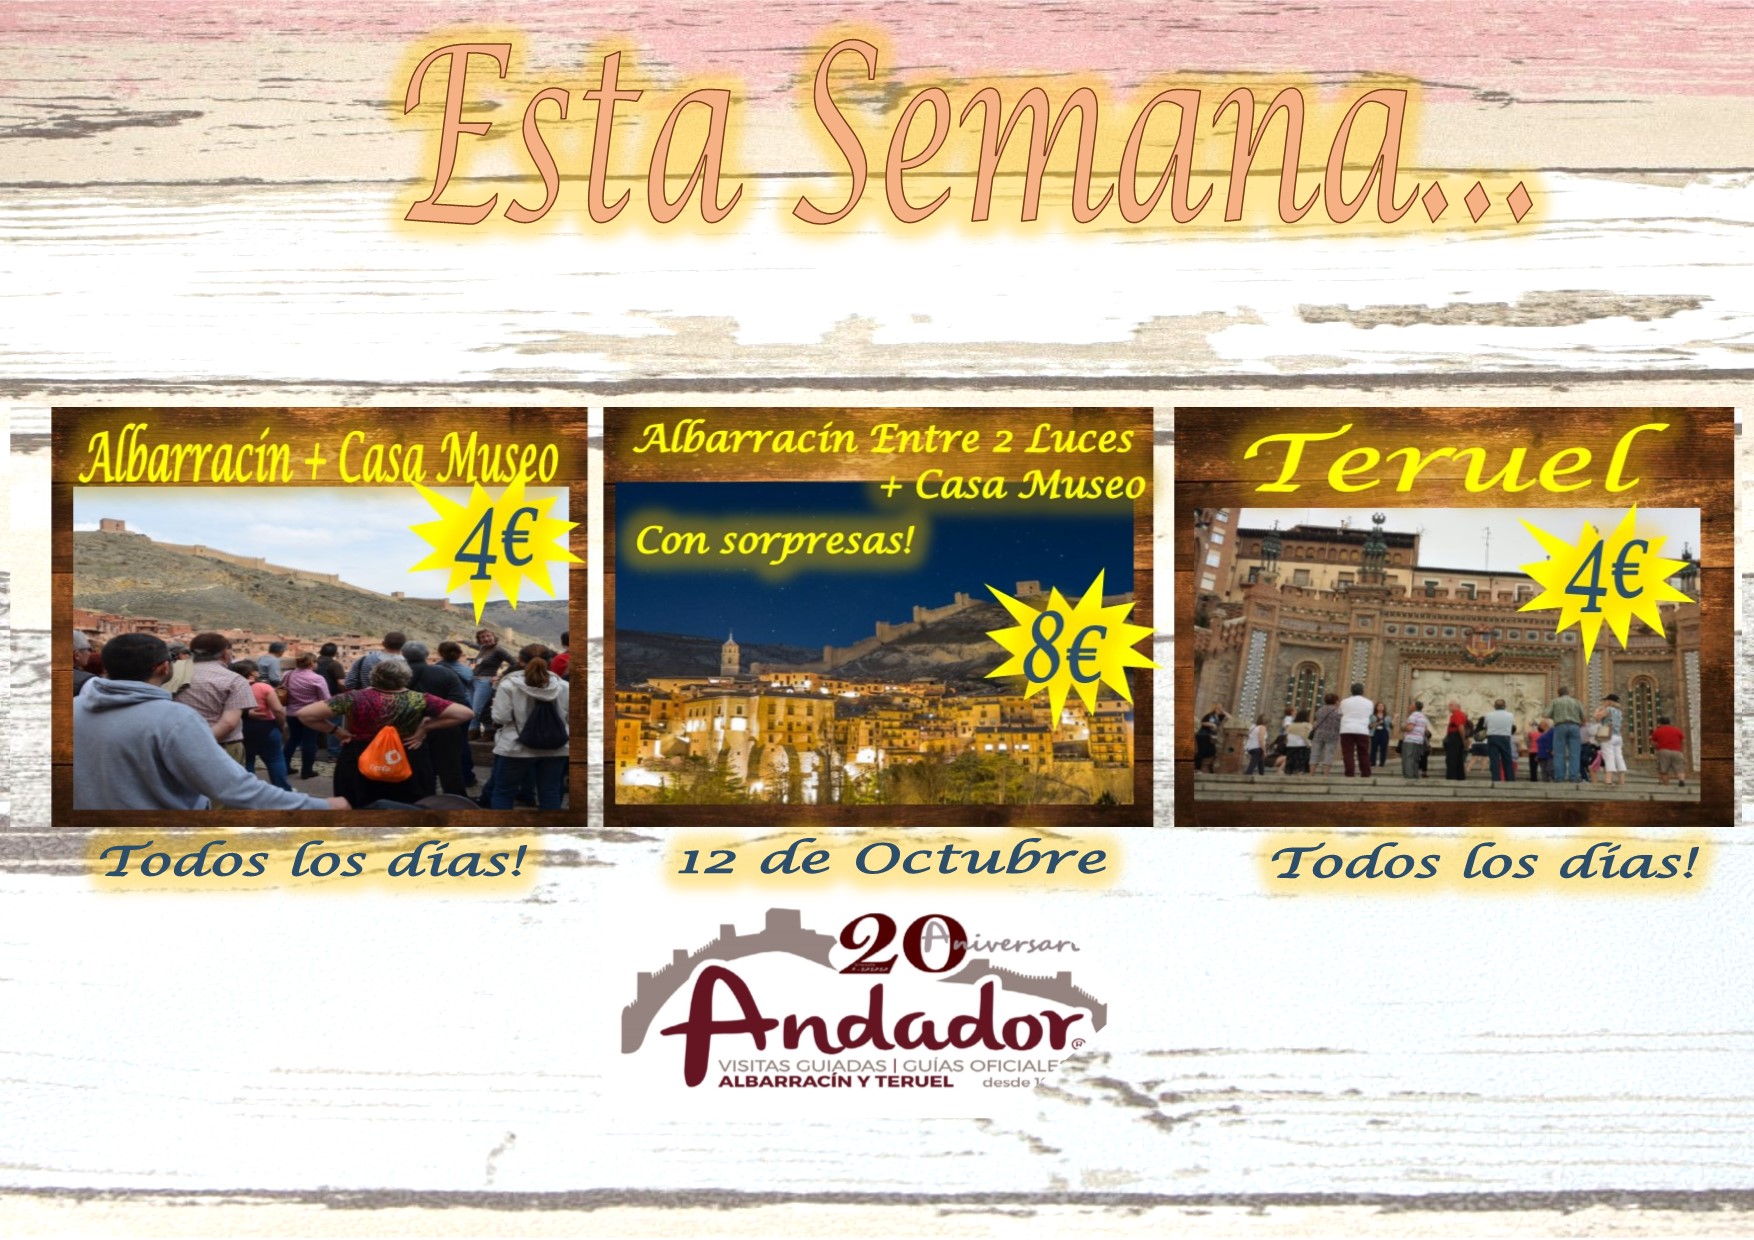 Esta semana…Albarracín y Teruel todos los días…Albarracín Entre 2 Luces…el 12 de Octubre!